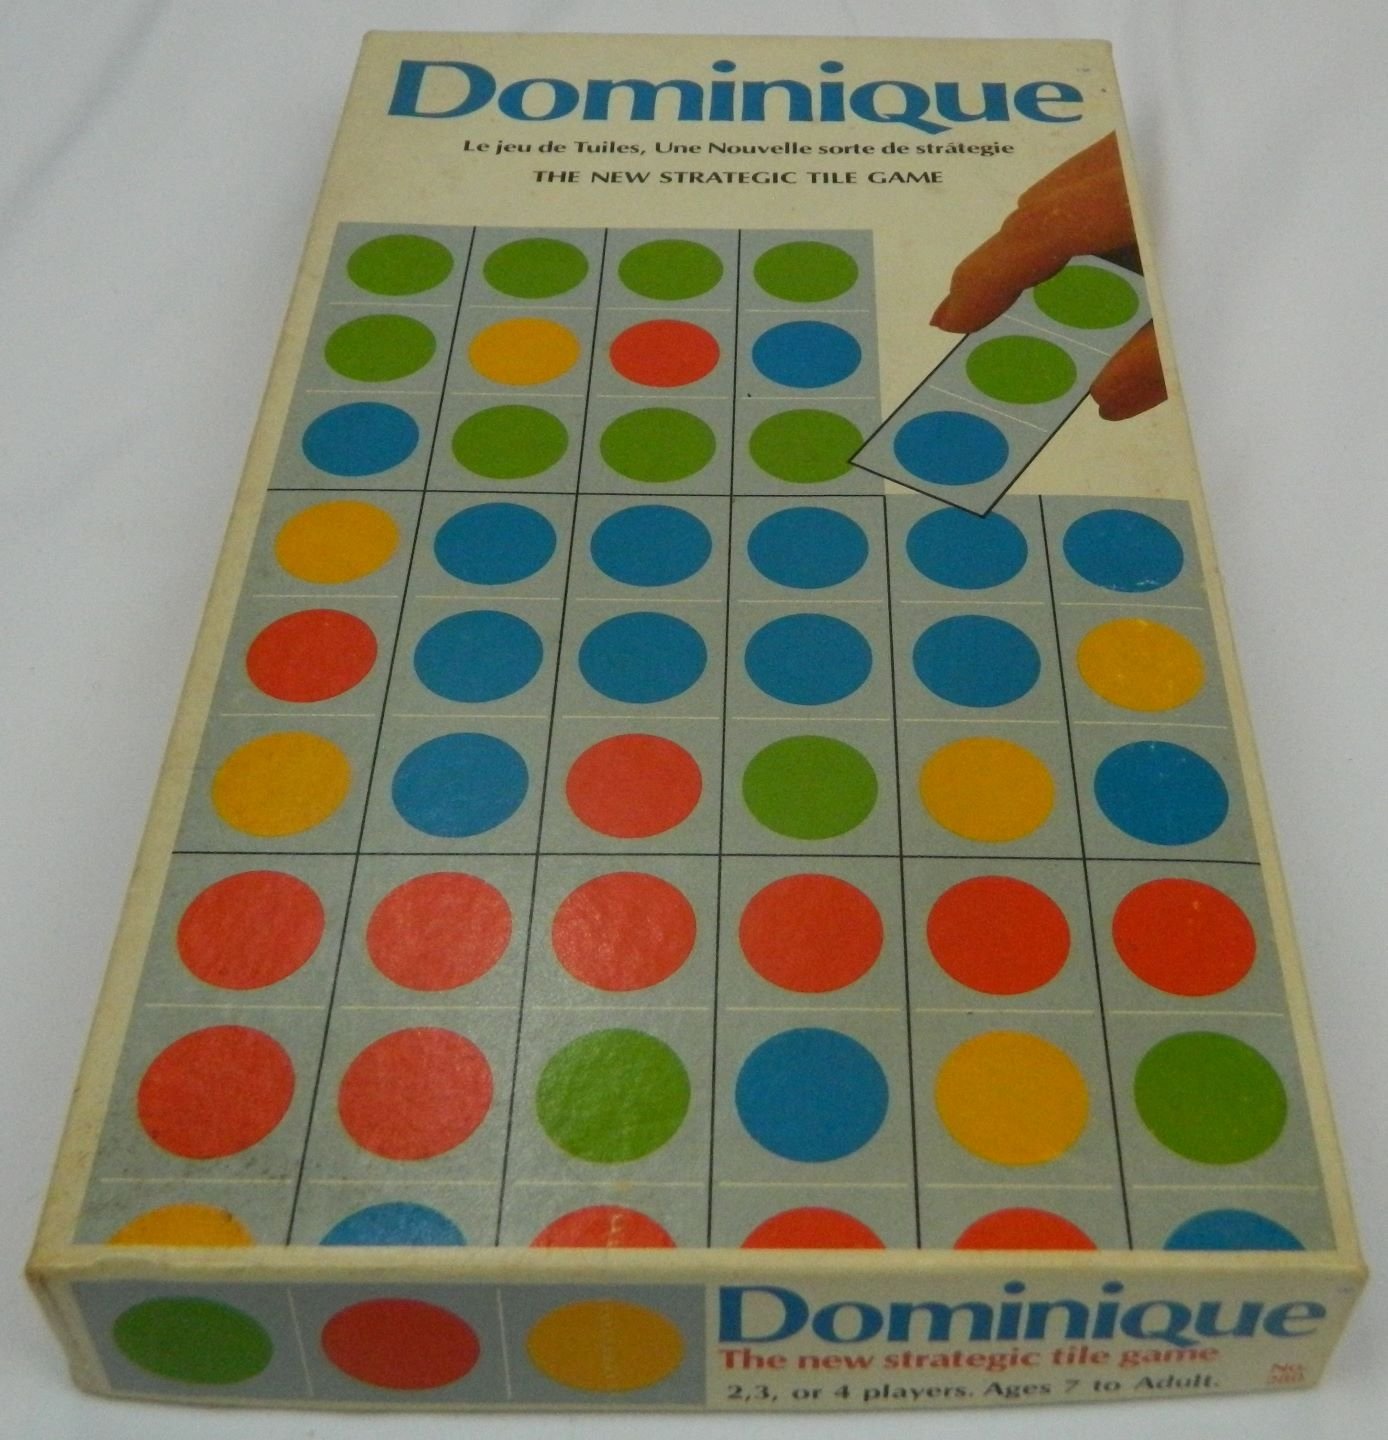 Box for Dominique